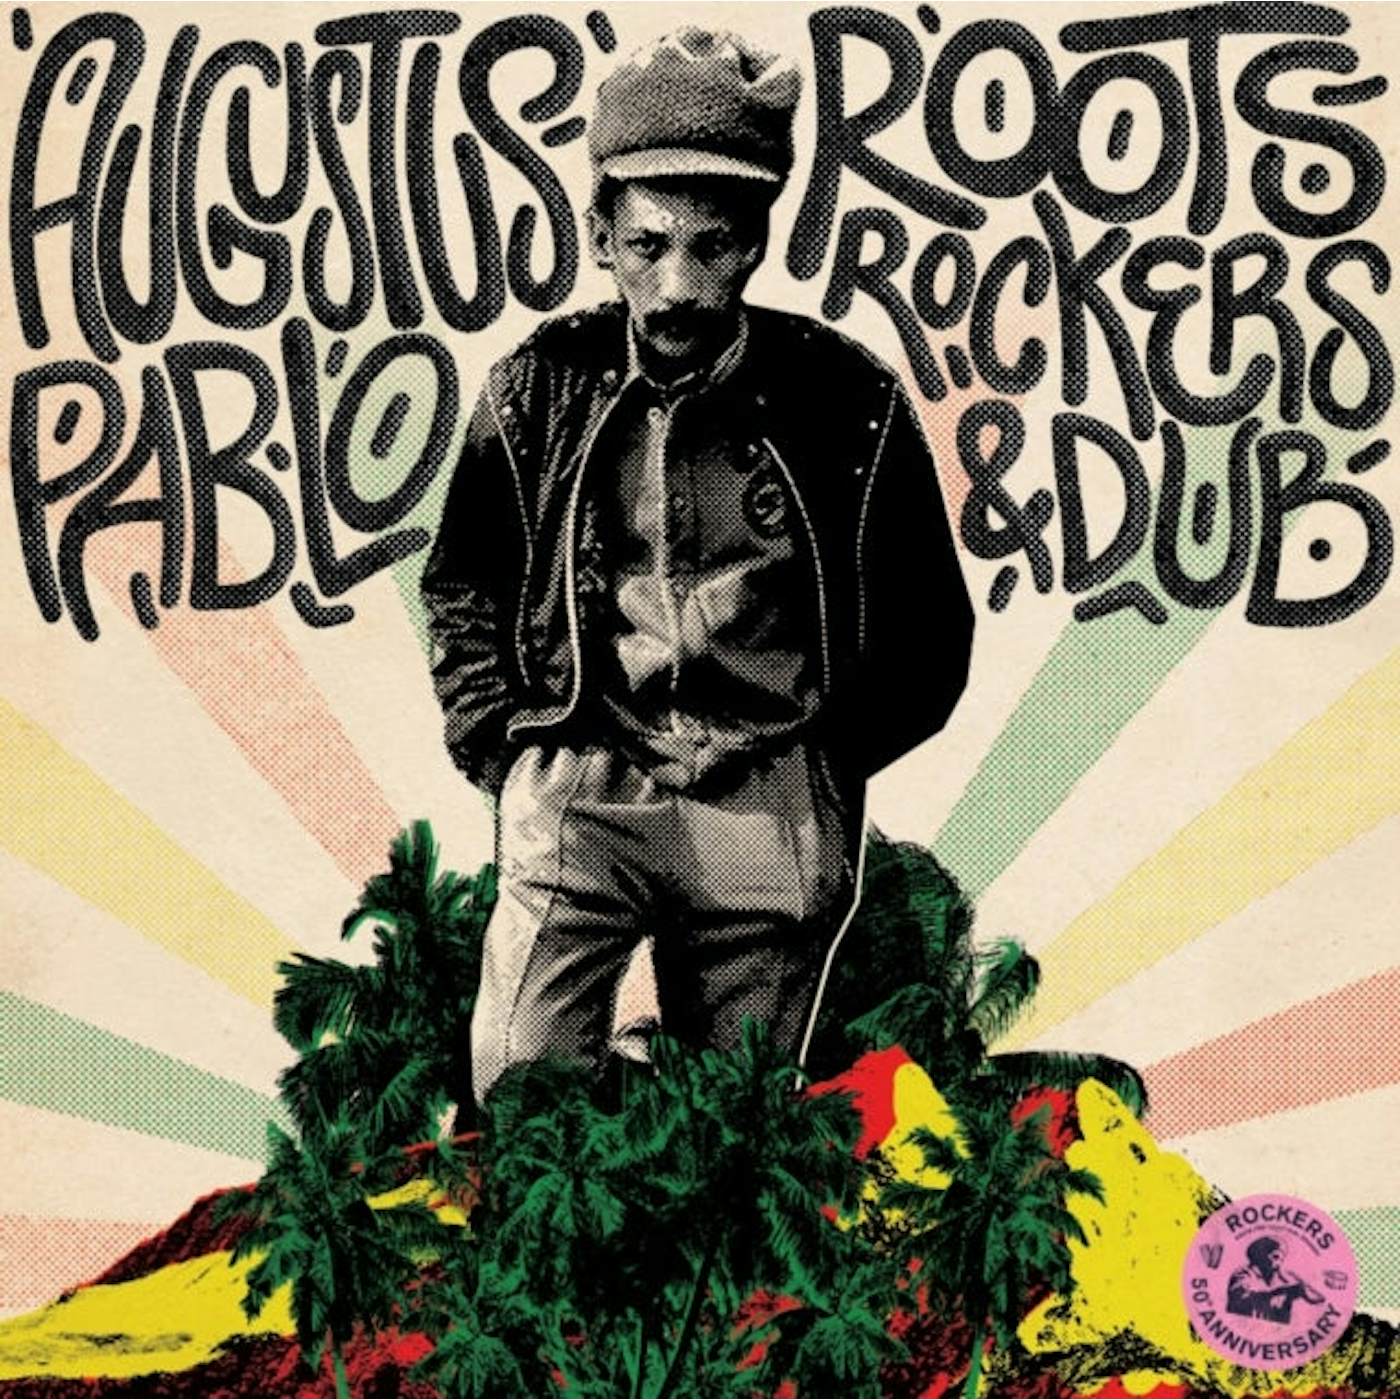 Augustus Pablo LP - Roots / Rockers & Dub (Vinyl)